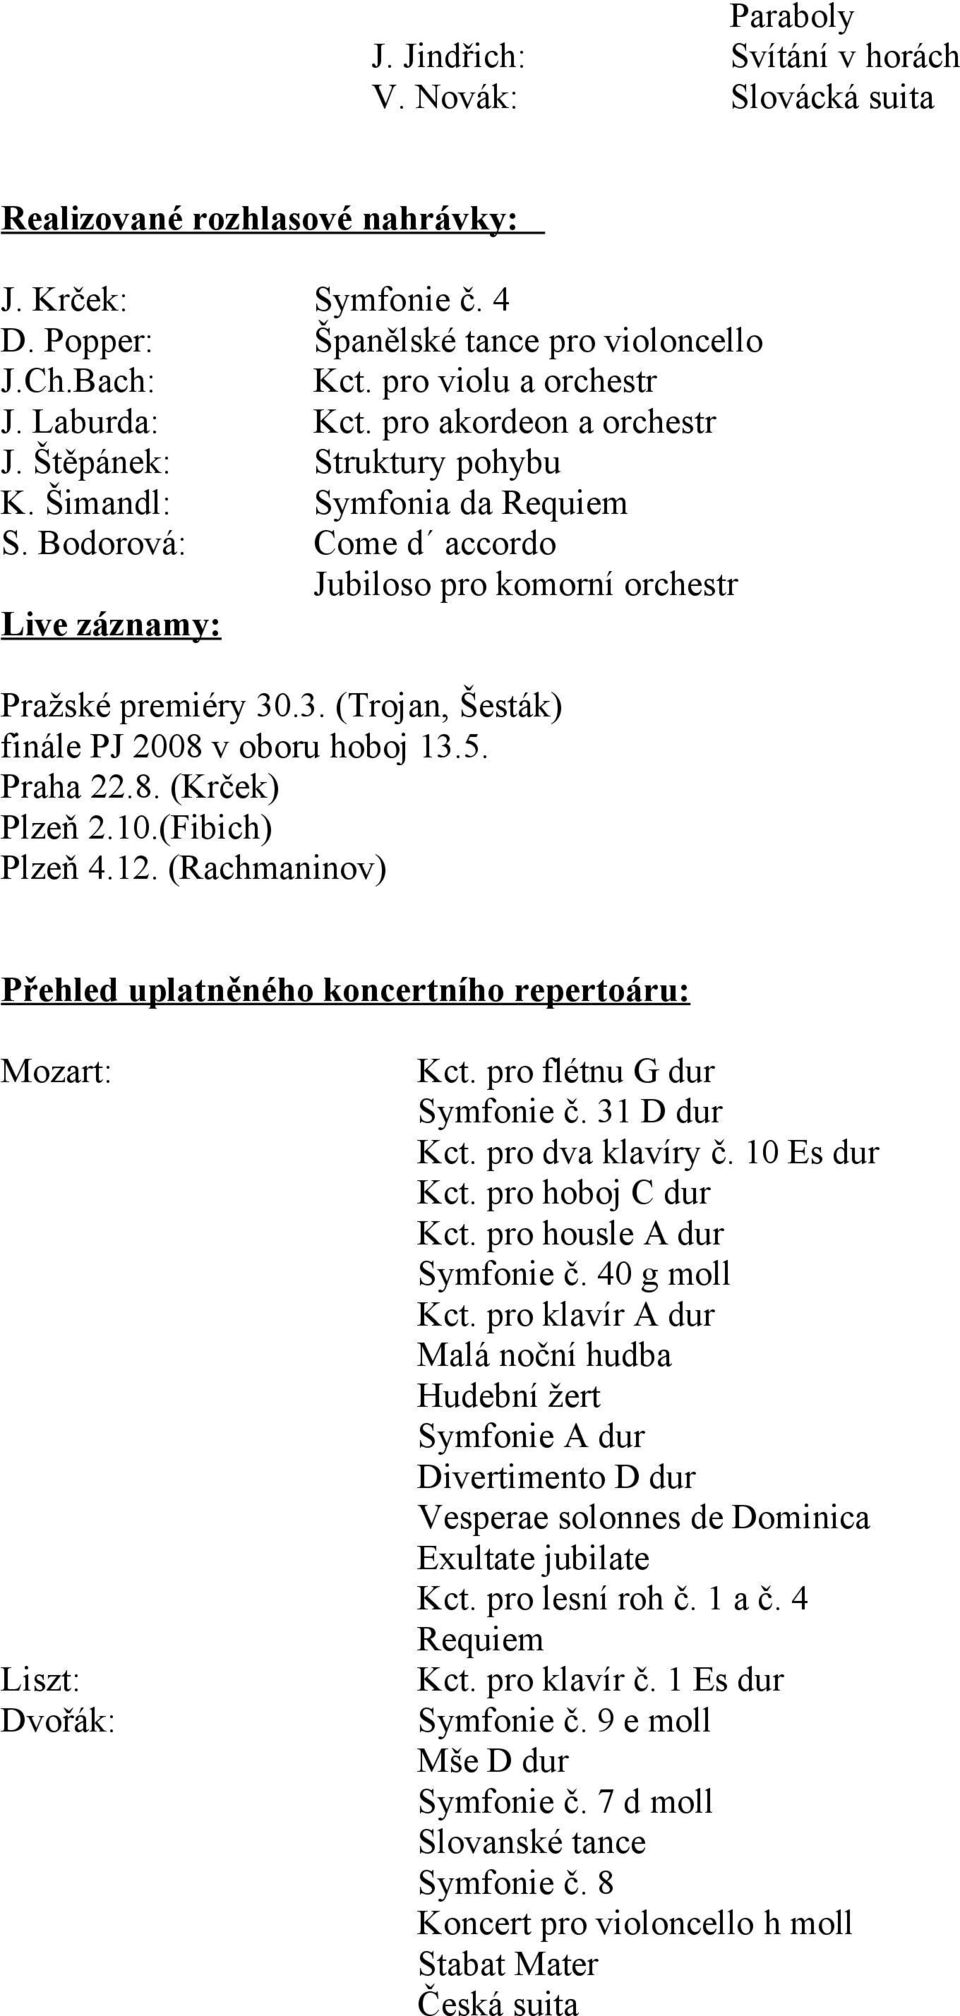 Bodorová: Come d accordo Jubiloso pro komorní orchestr Live záznamy: Pražské premiéry 30.3. (Trojan, Šesták) finále PJ 2008 v oboru hoboj 13.5. Praha 22.8. (Krček) Plzeň 2.10.(Fibich) Plzeň 4.12.